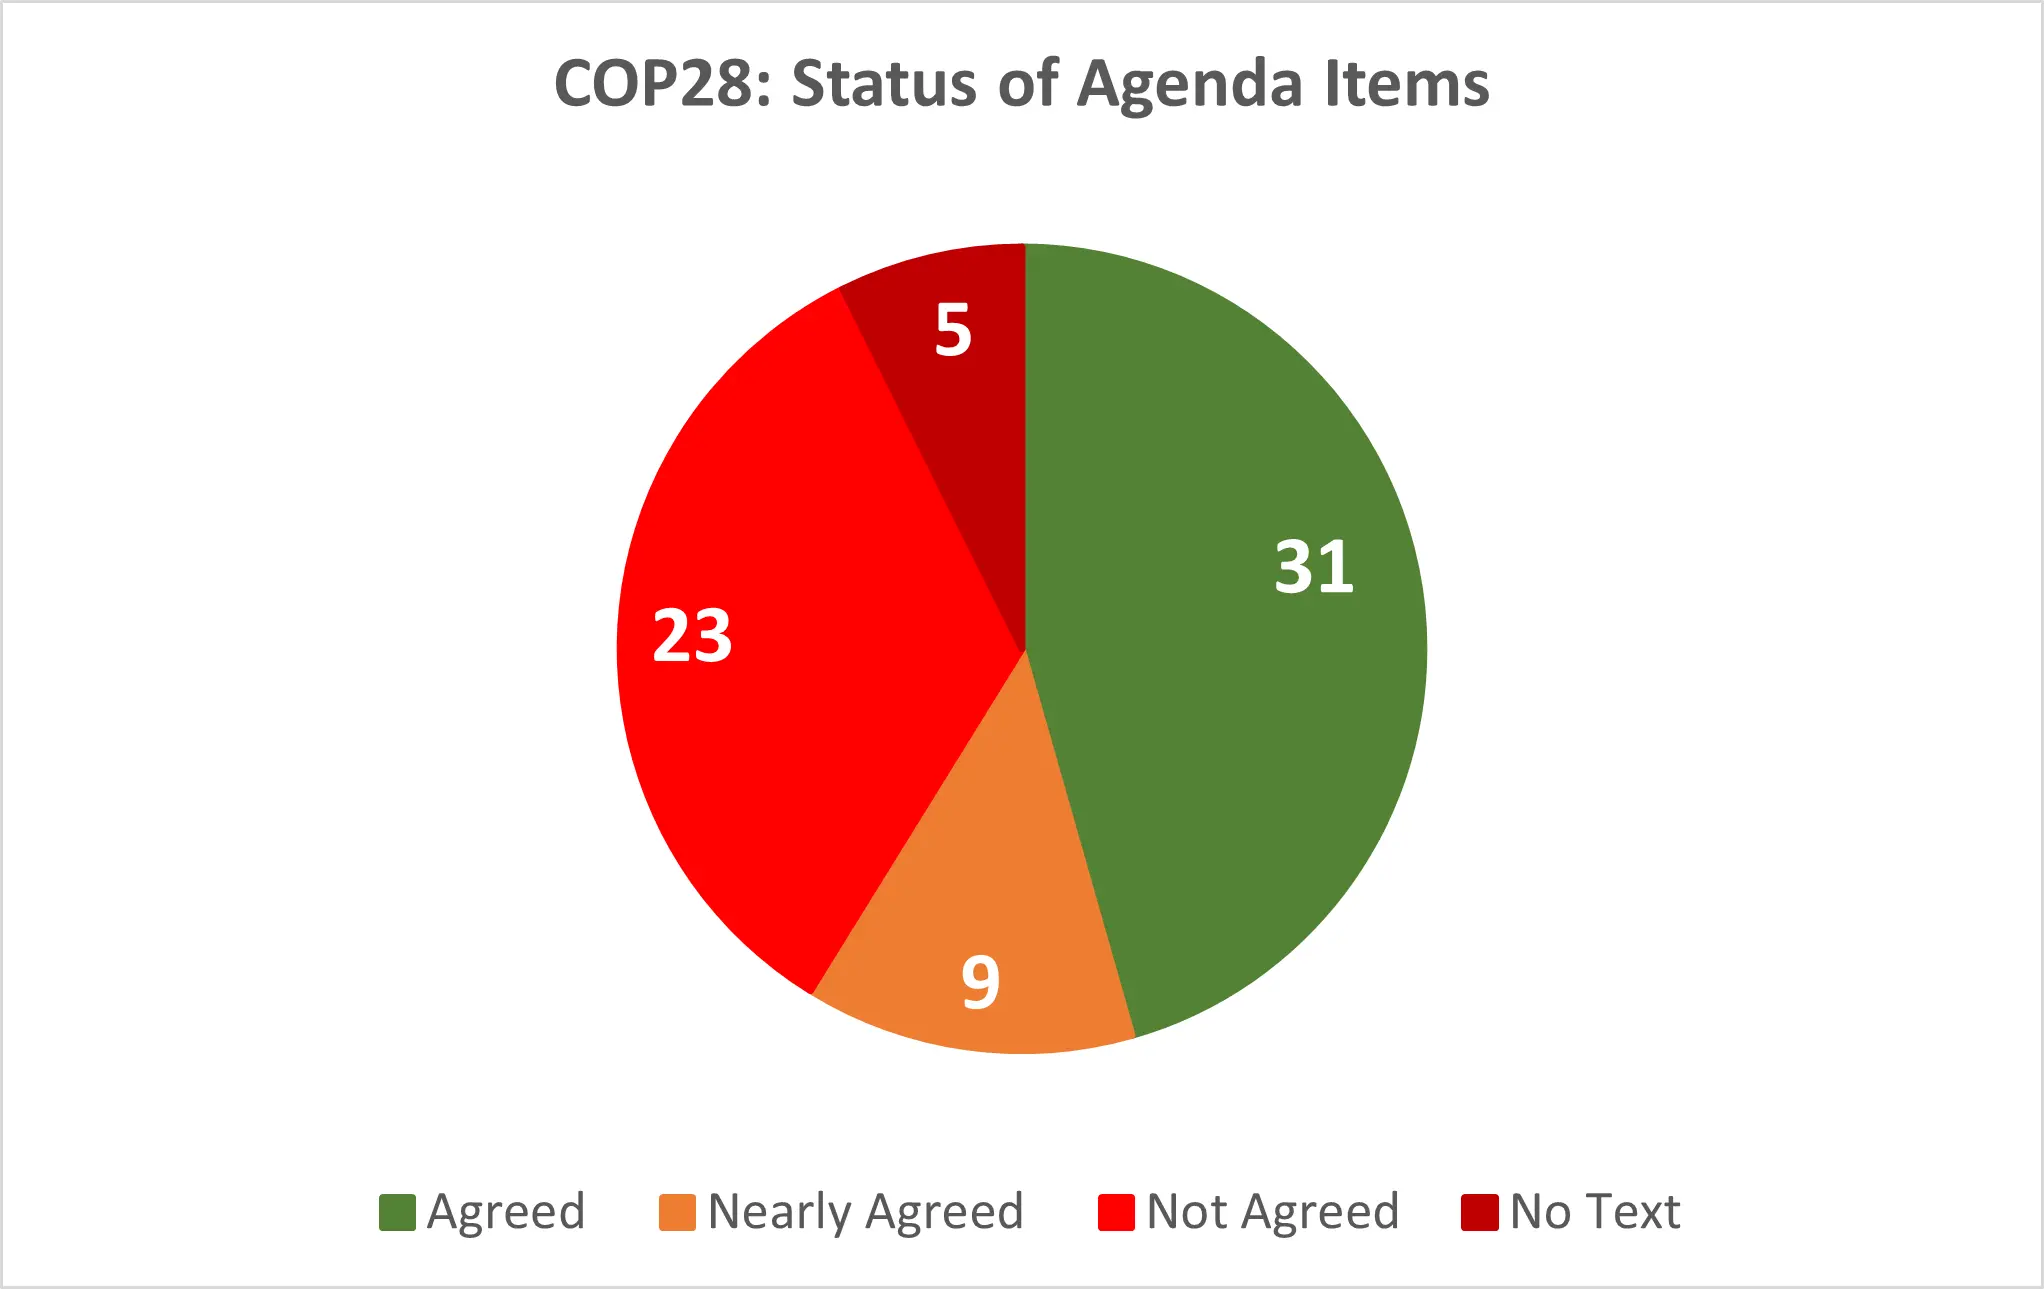 COP 28 status of agenda items